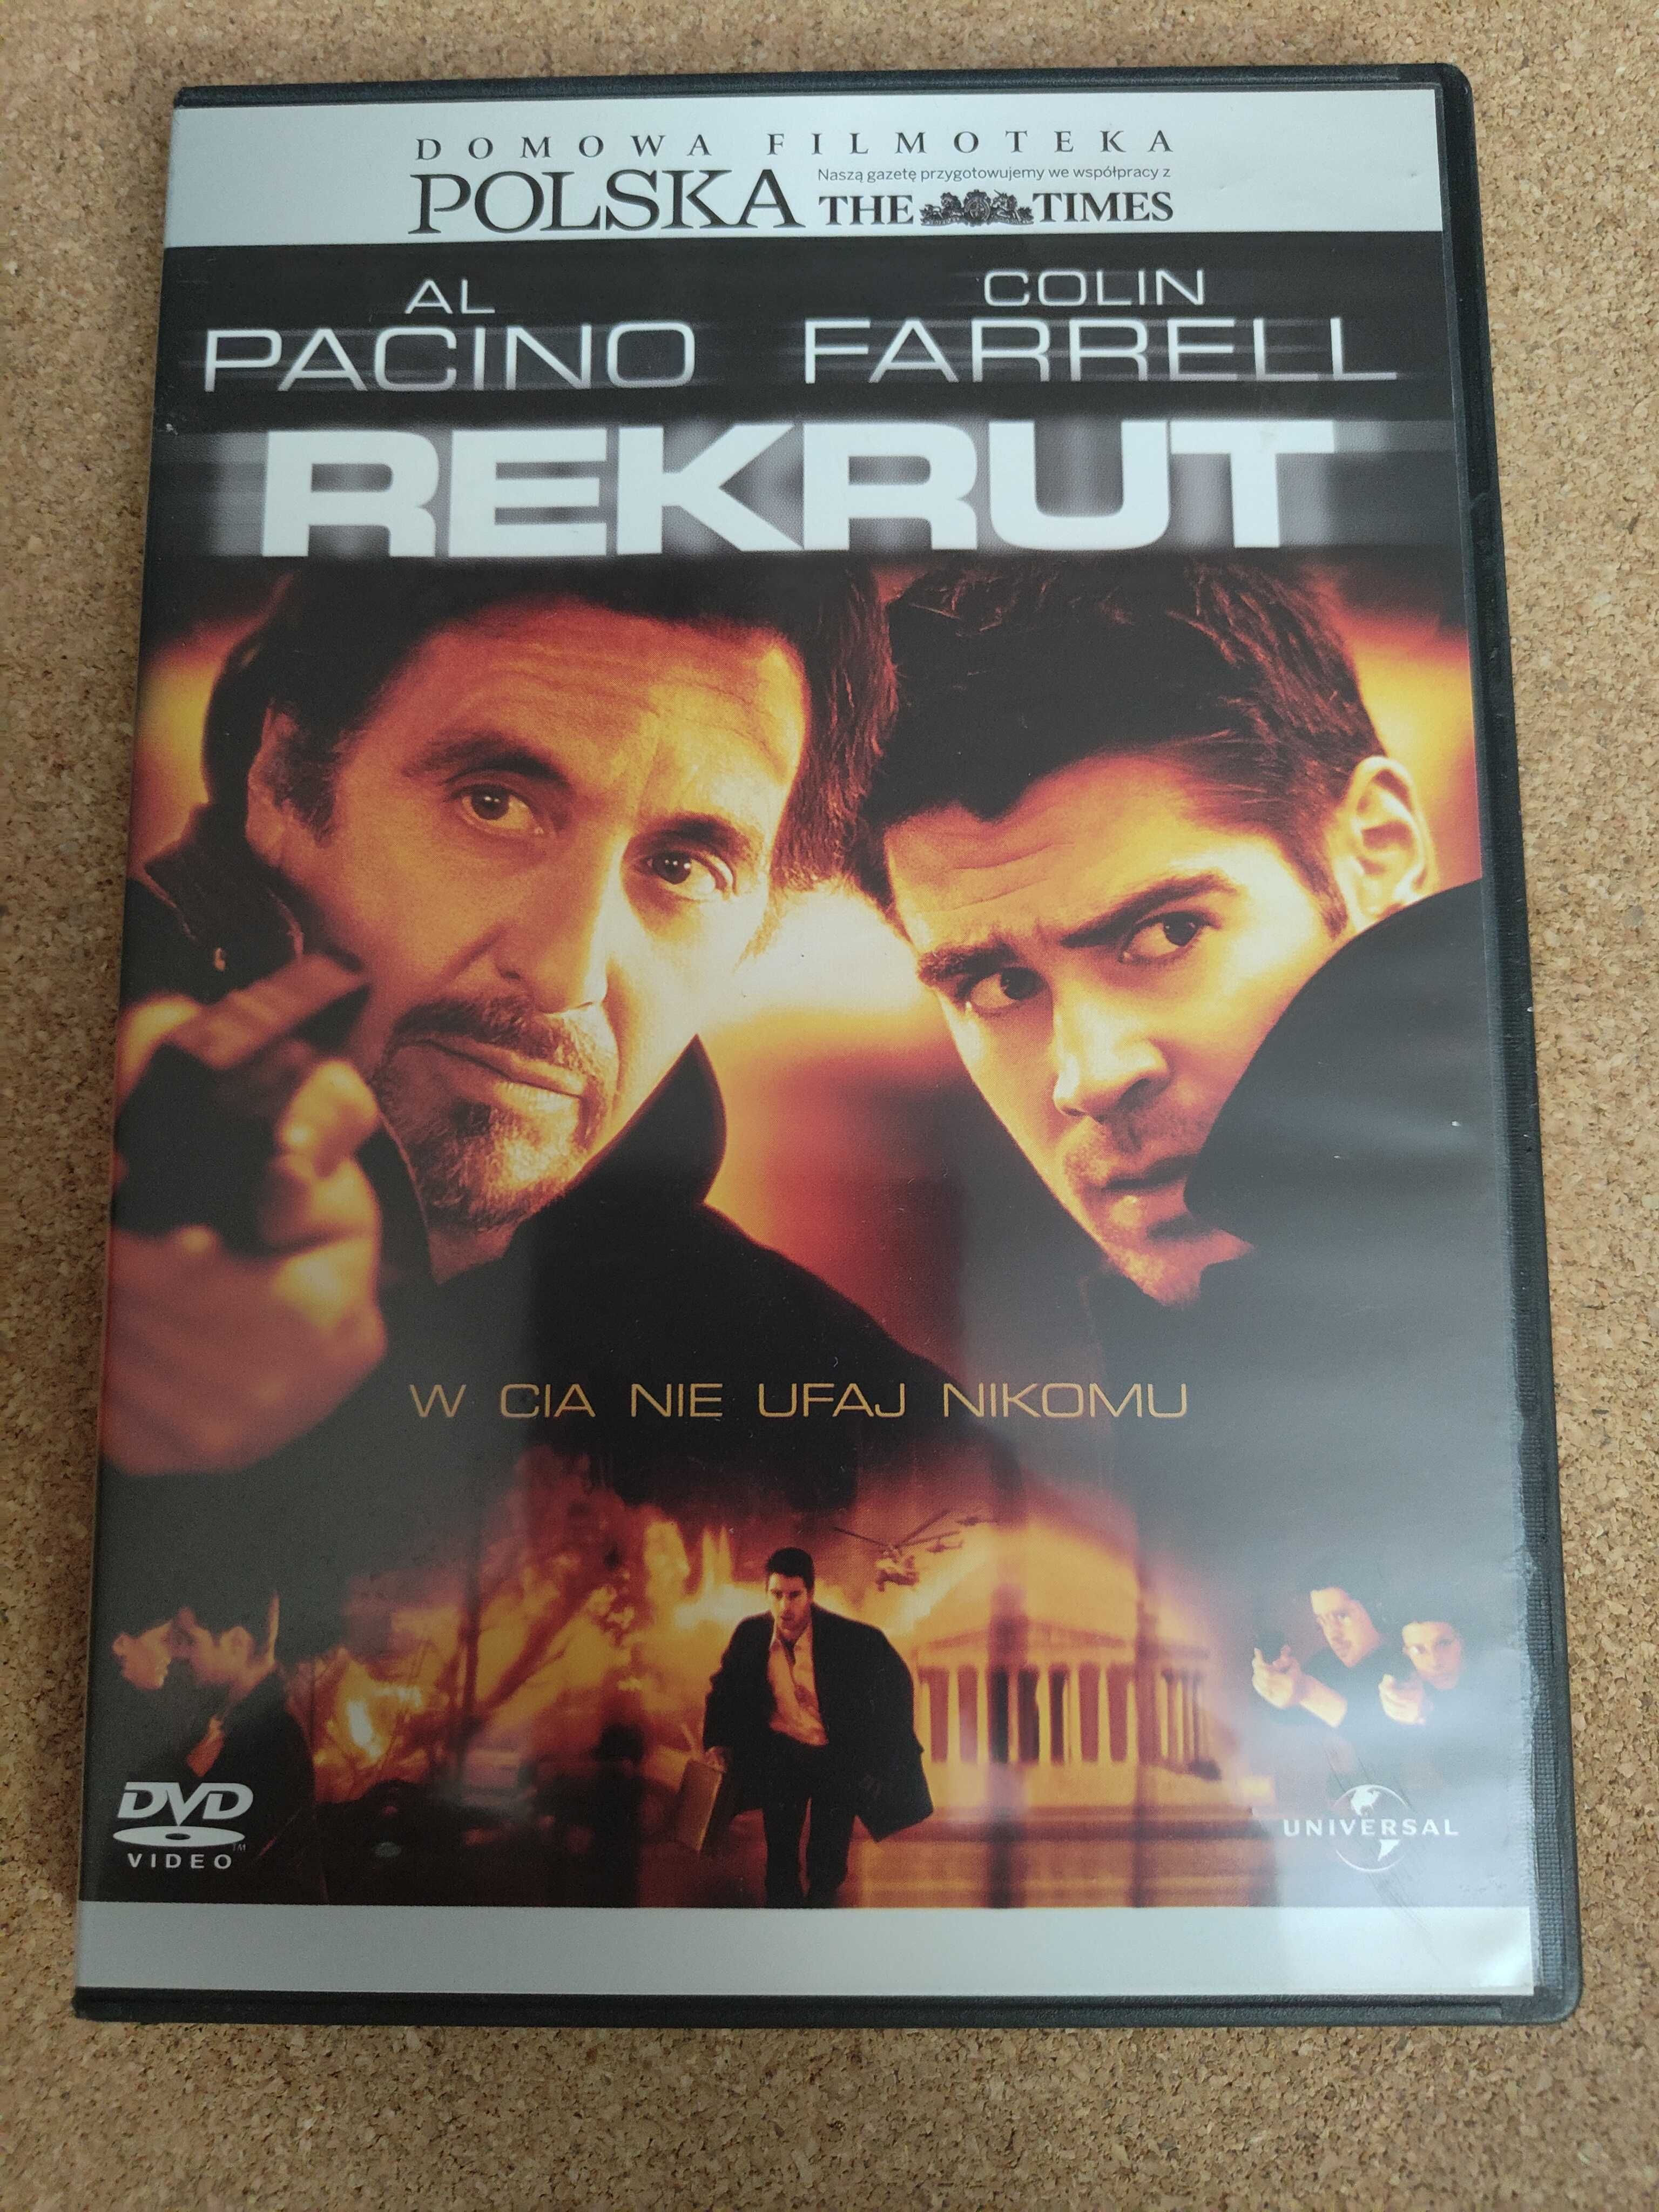 film DVD "Rekrut" Al Pacino, Colin Farrell